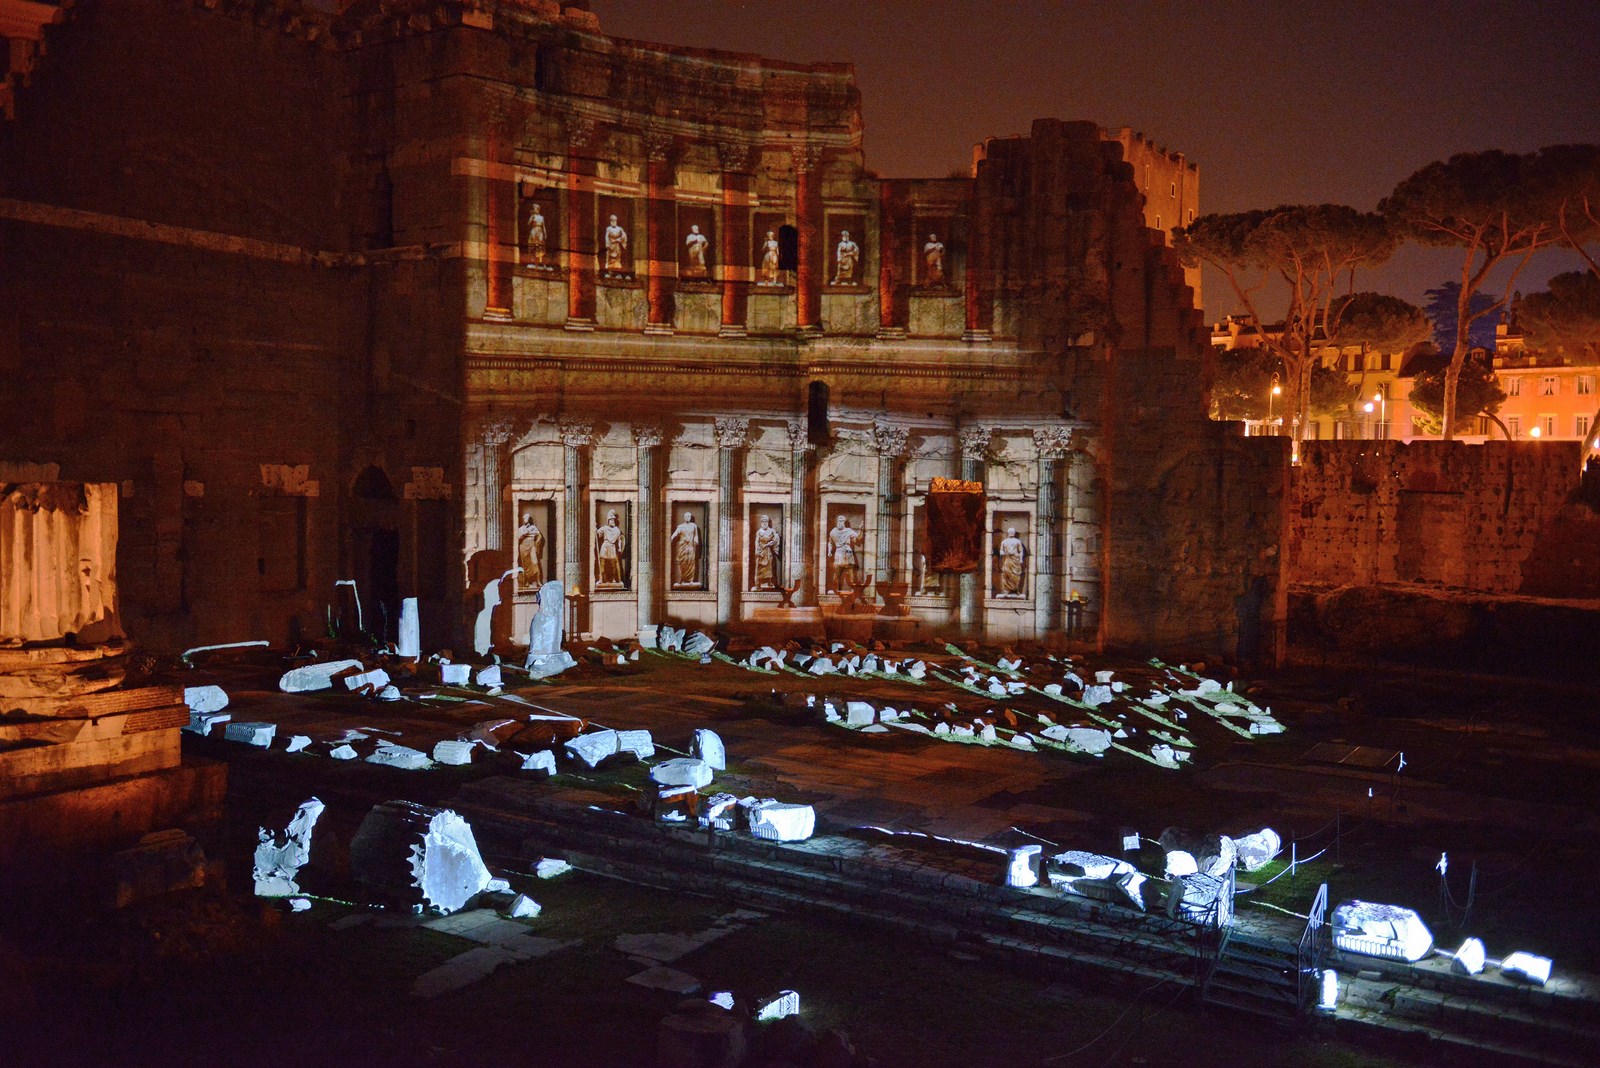 Viaggi nellAntica Roma. Il Foro di Augusto 4 Una notte tra i siti archeologici in Italia. I nostri consigli